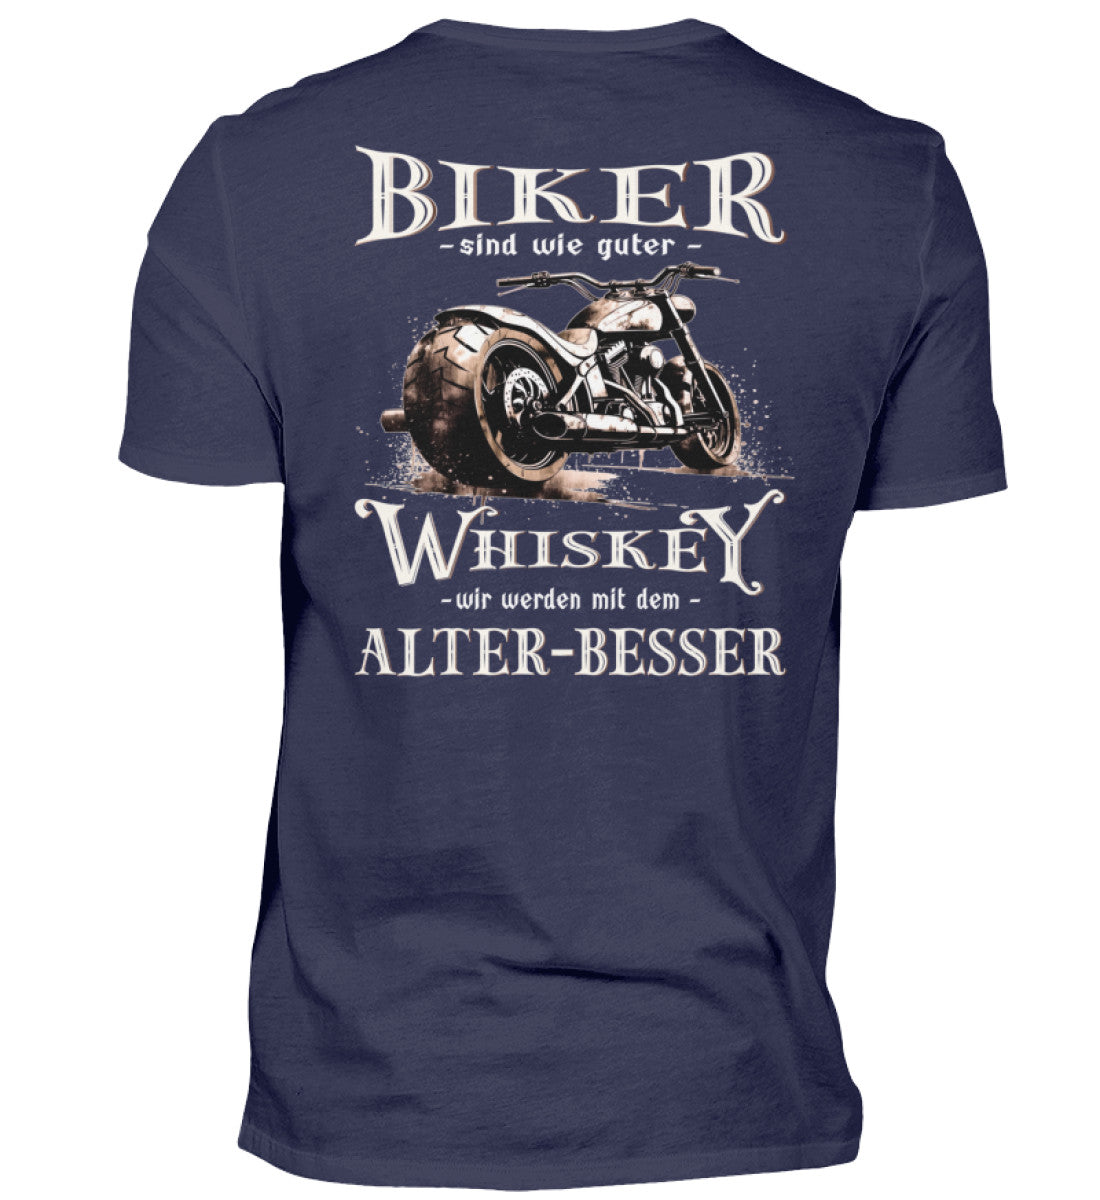 Biker T-Shirt mit einem vintage Aufdruck, Biker sind wie gute Whiskey - wir werden mit dem Alter besser mit Back Print in navy blau. 